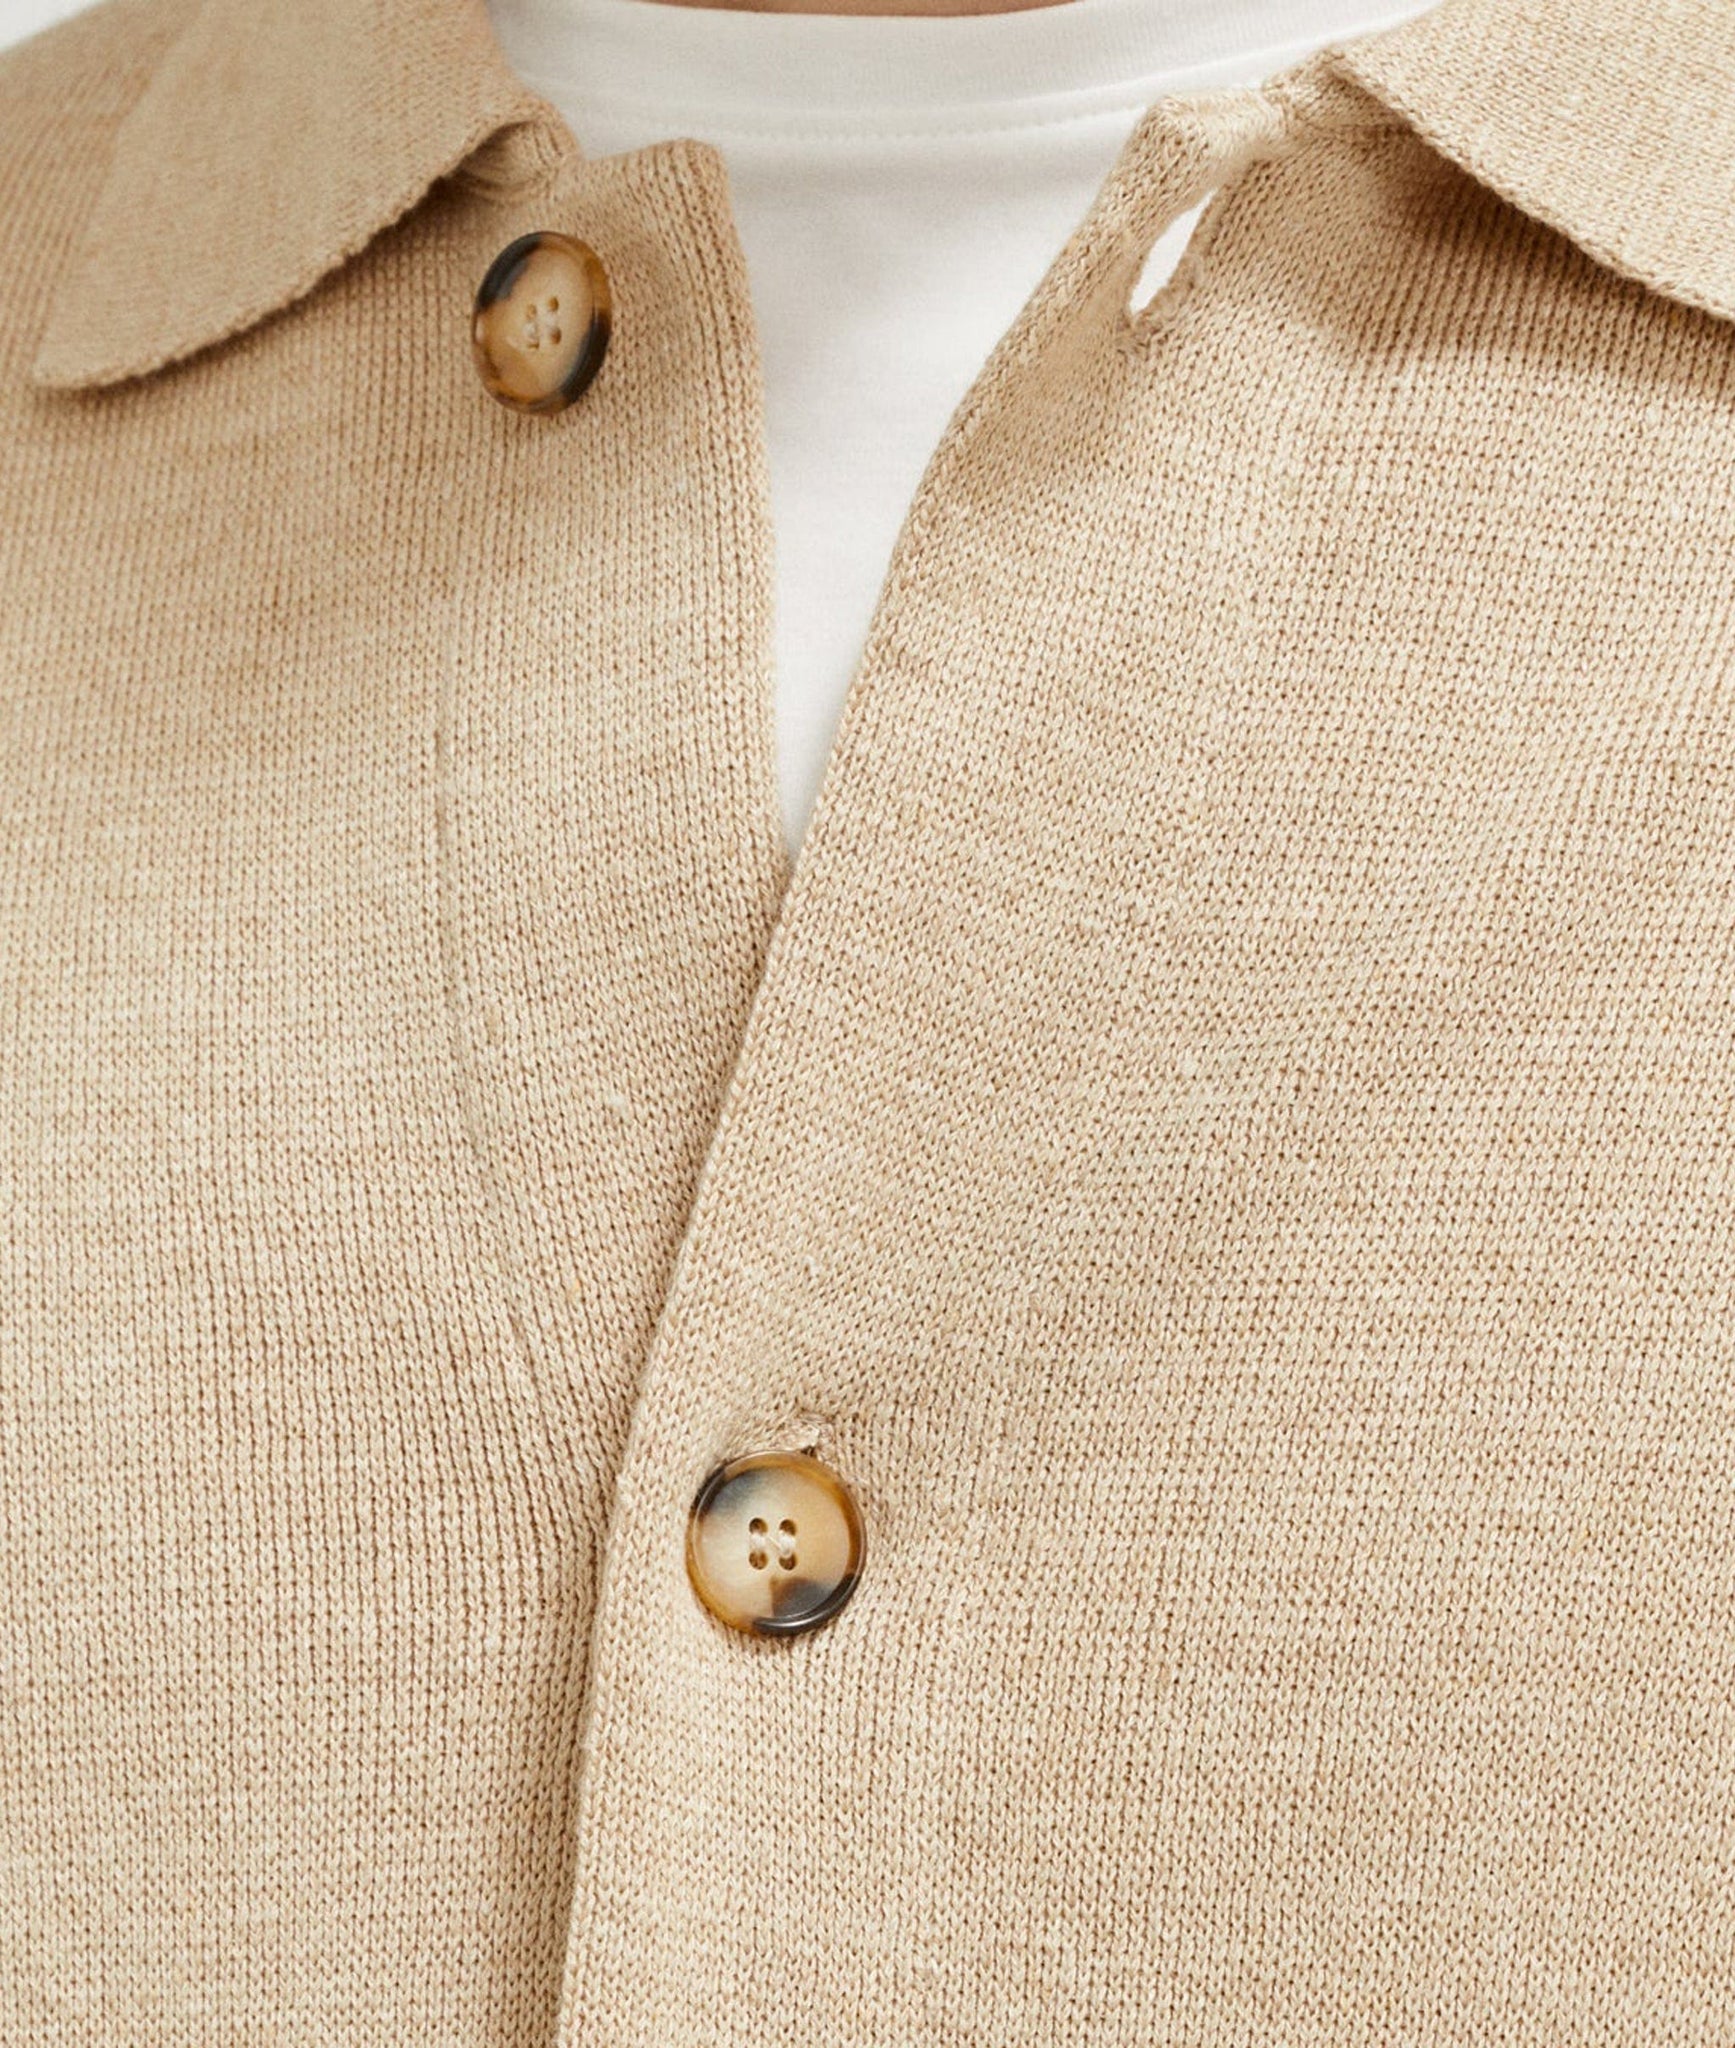 The Linen Cotton Jacket